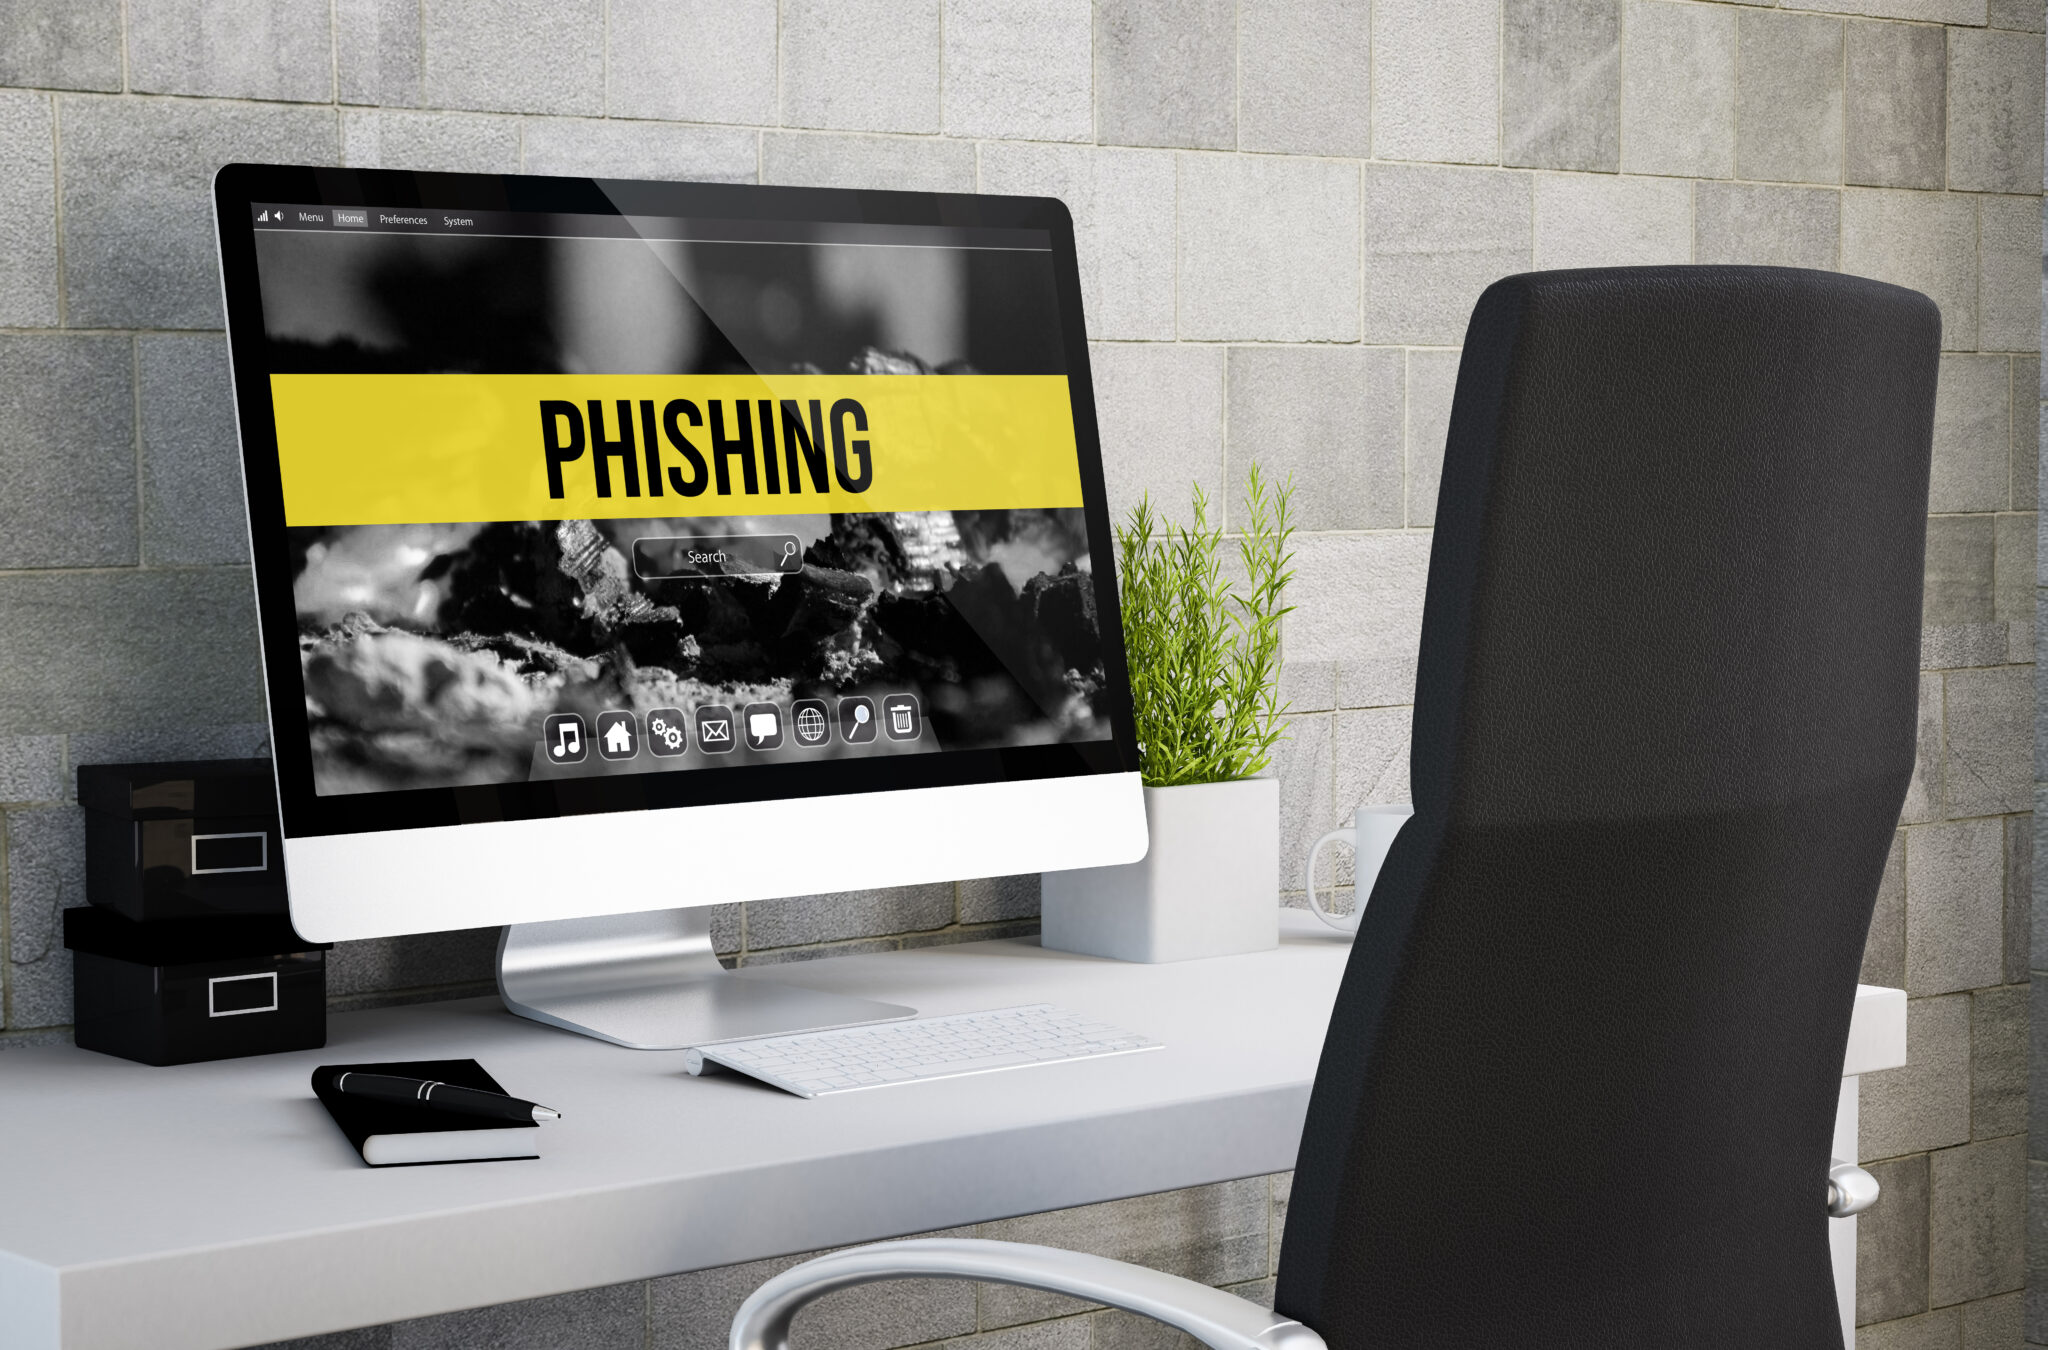 Tips to Prevent Phishing​